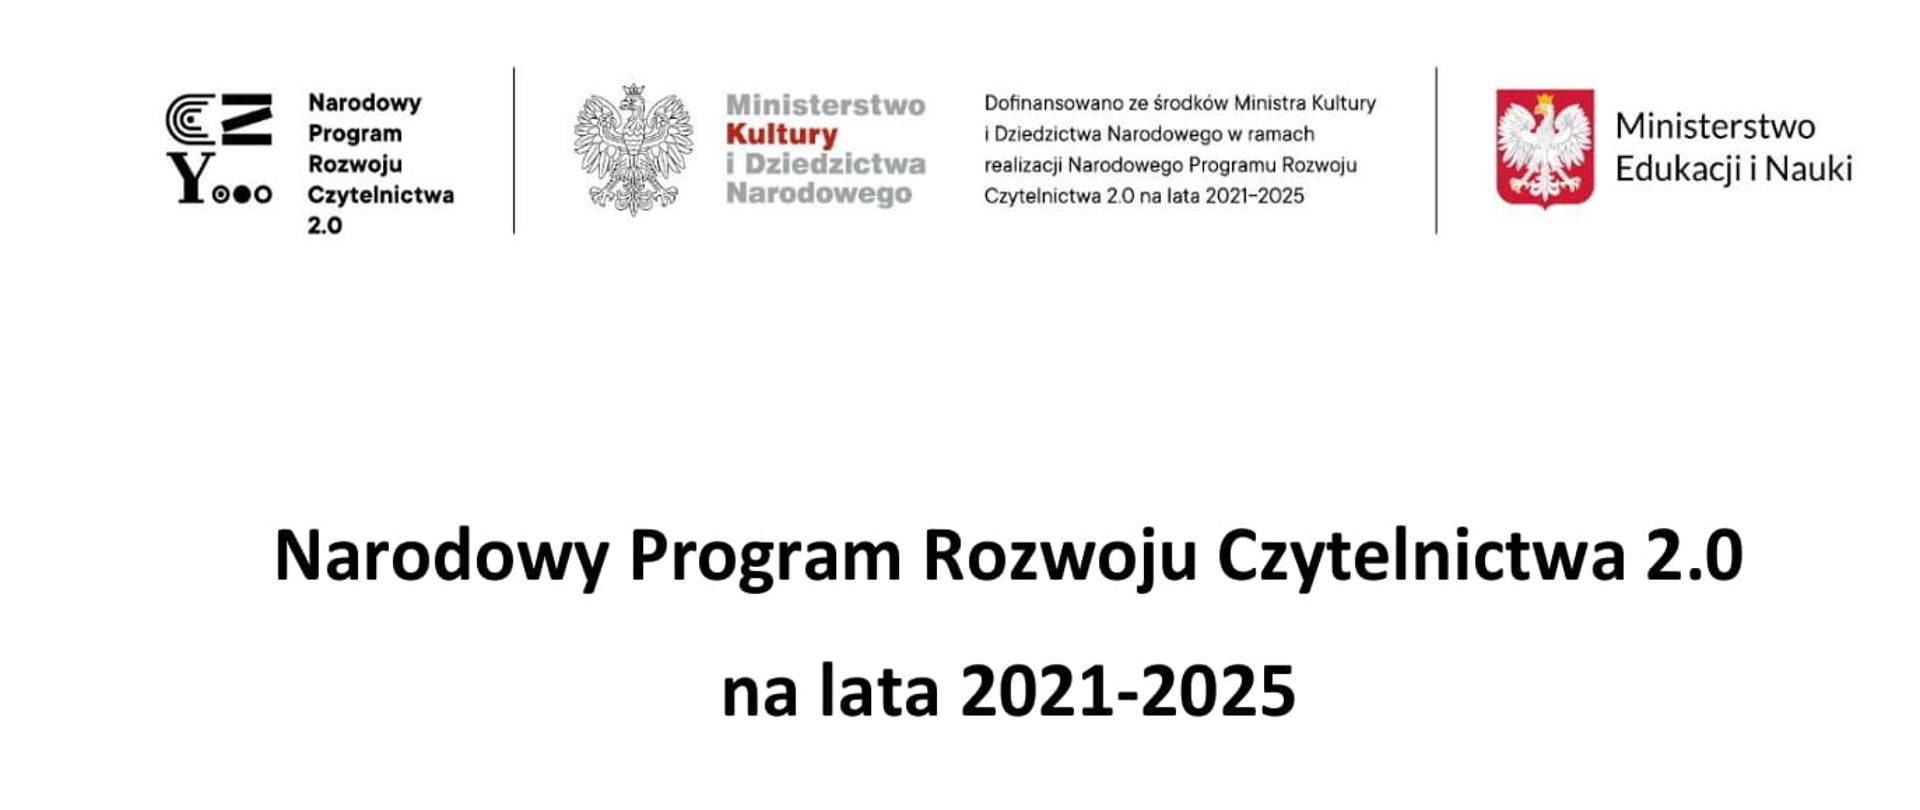 Na banerze znajdują się loga: Narodowy Program Rozwoju Czytelnictwa 2.0, Ministerstwa Kultury i Dziedzictwa Narodowego oraz Ministerstwa Edukacji i Nauki. Poniżej treść: Narodowy Program Rozwoju Czytelnictwa 2.0 na lata 2021-2025